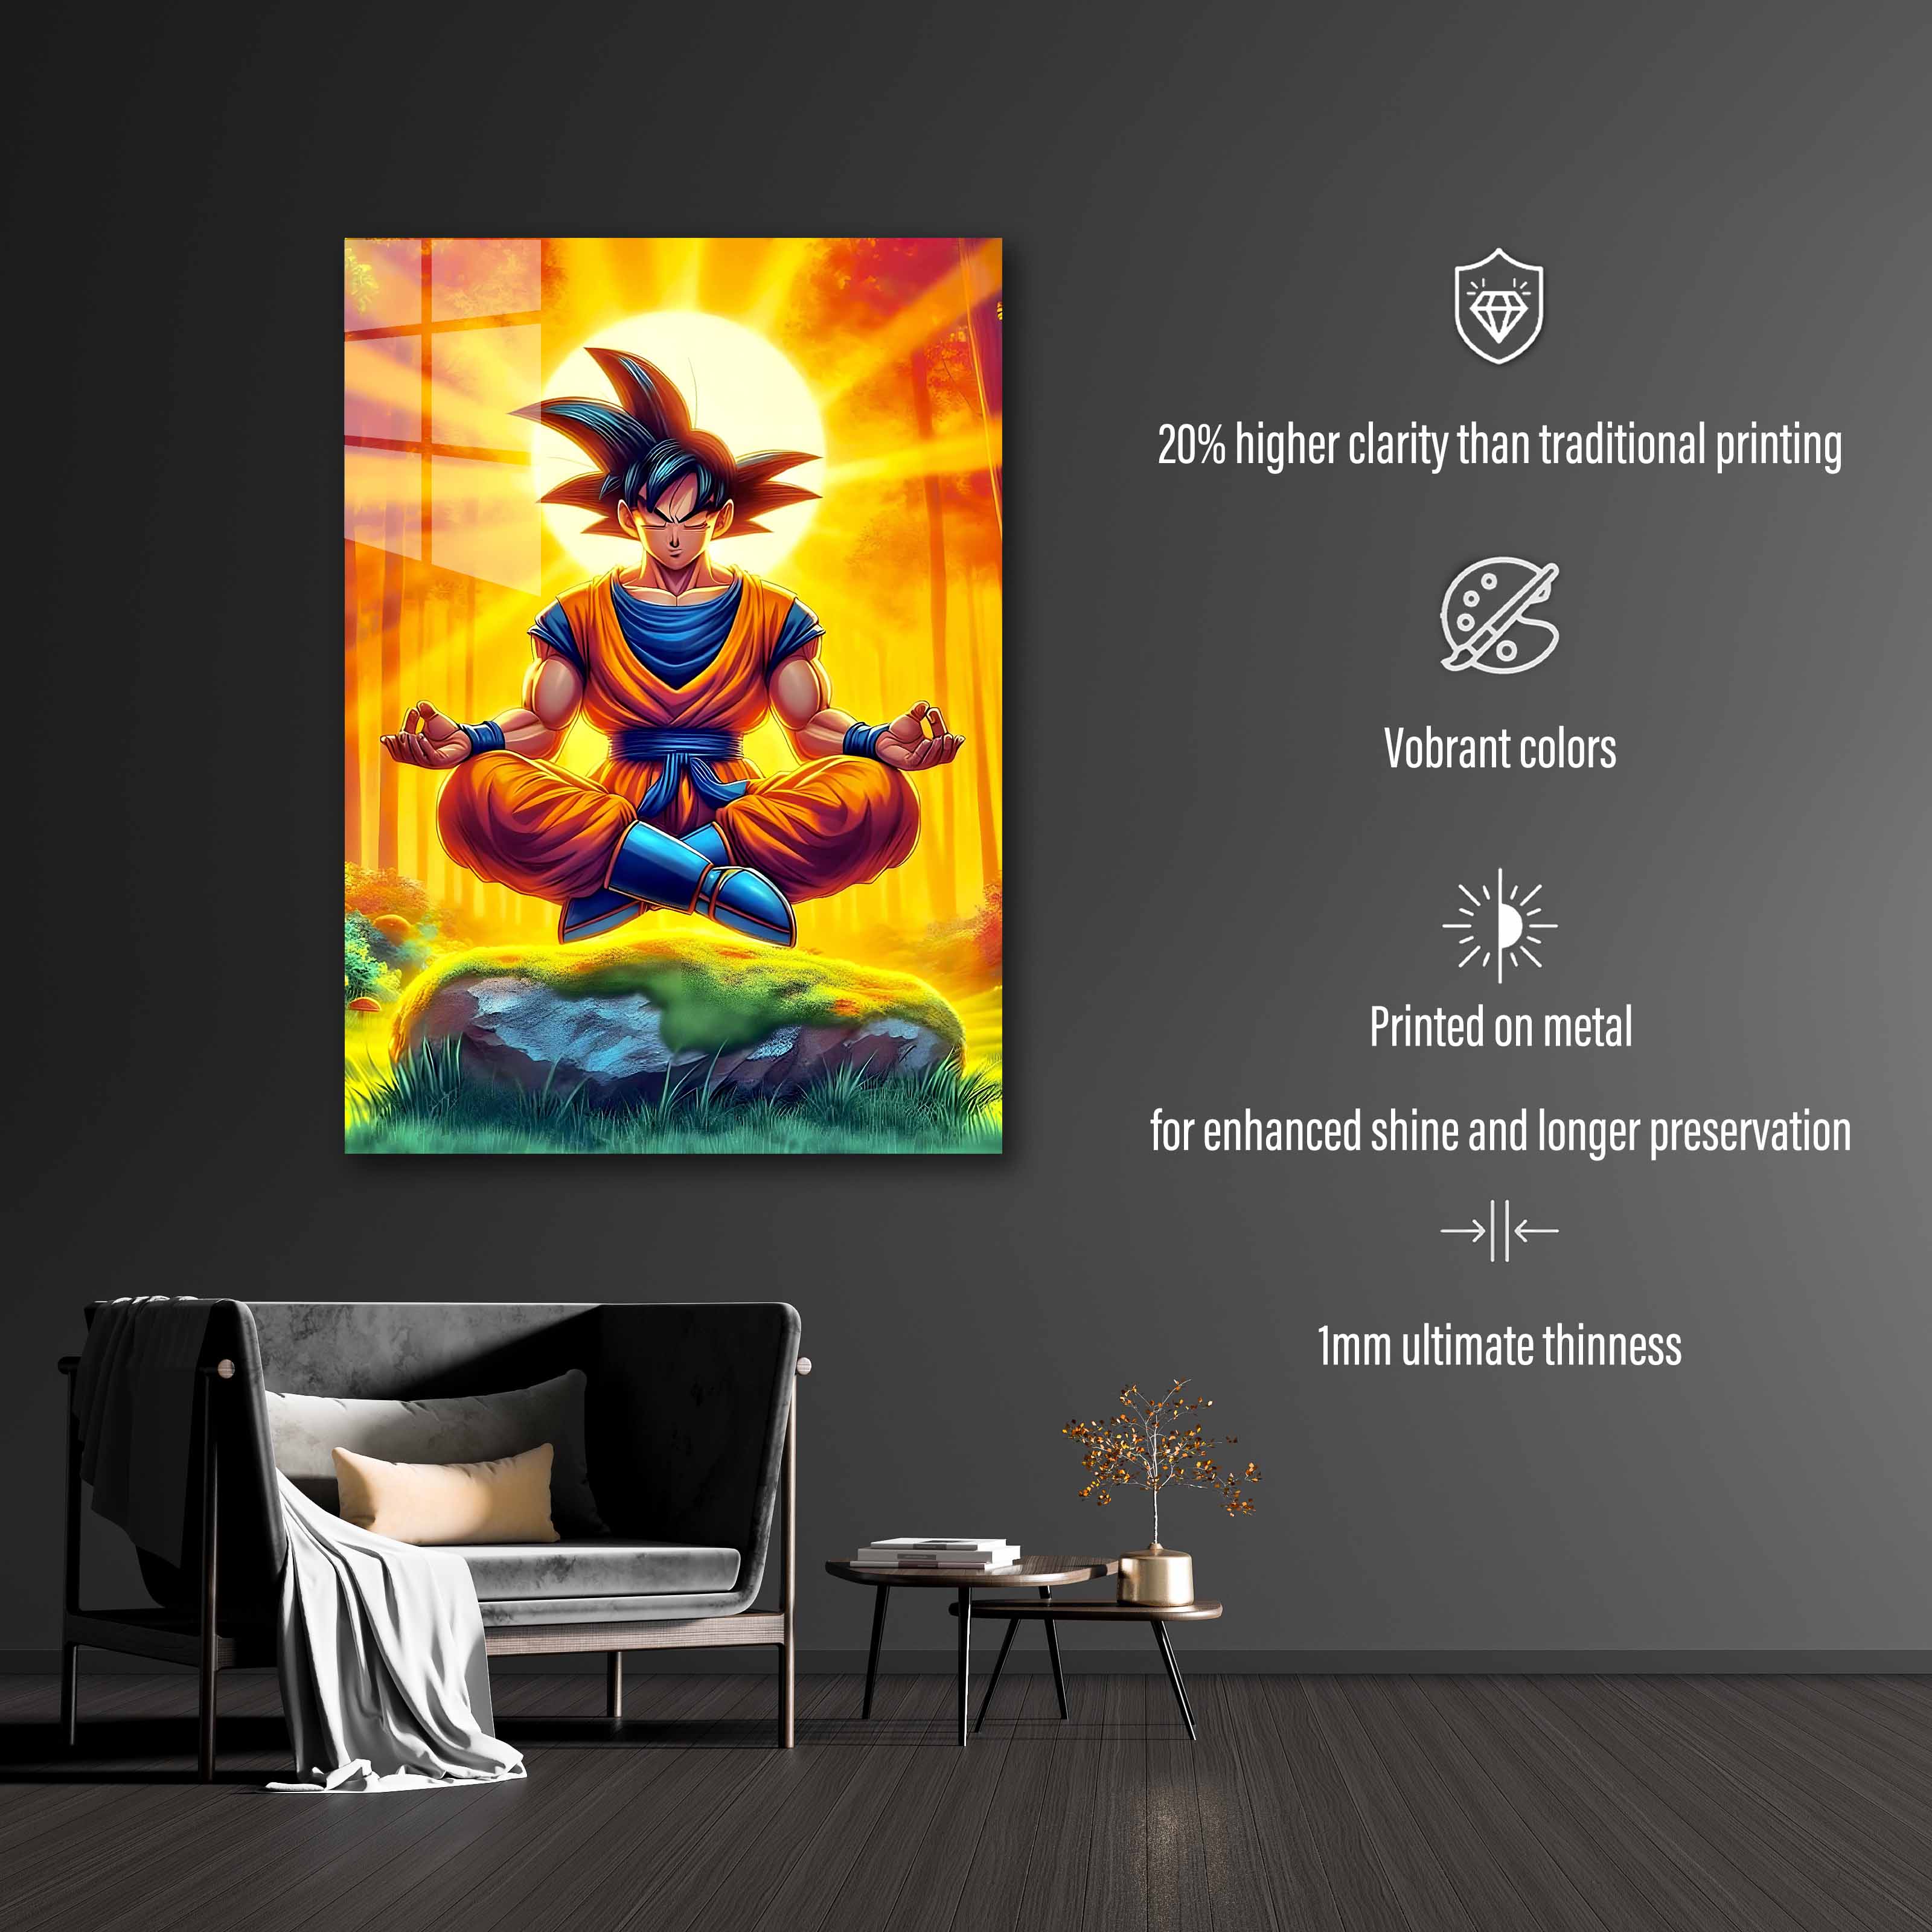 Goku Dragon Ball is Mediating-designed by @DarkJay AI